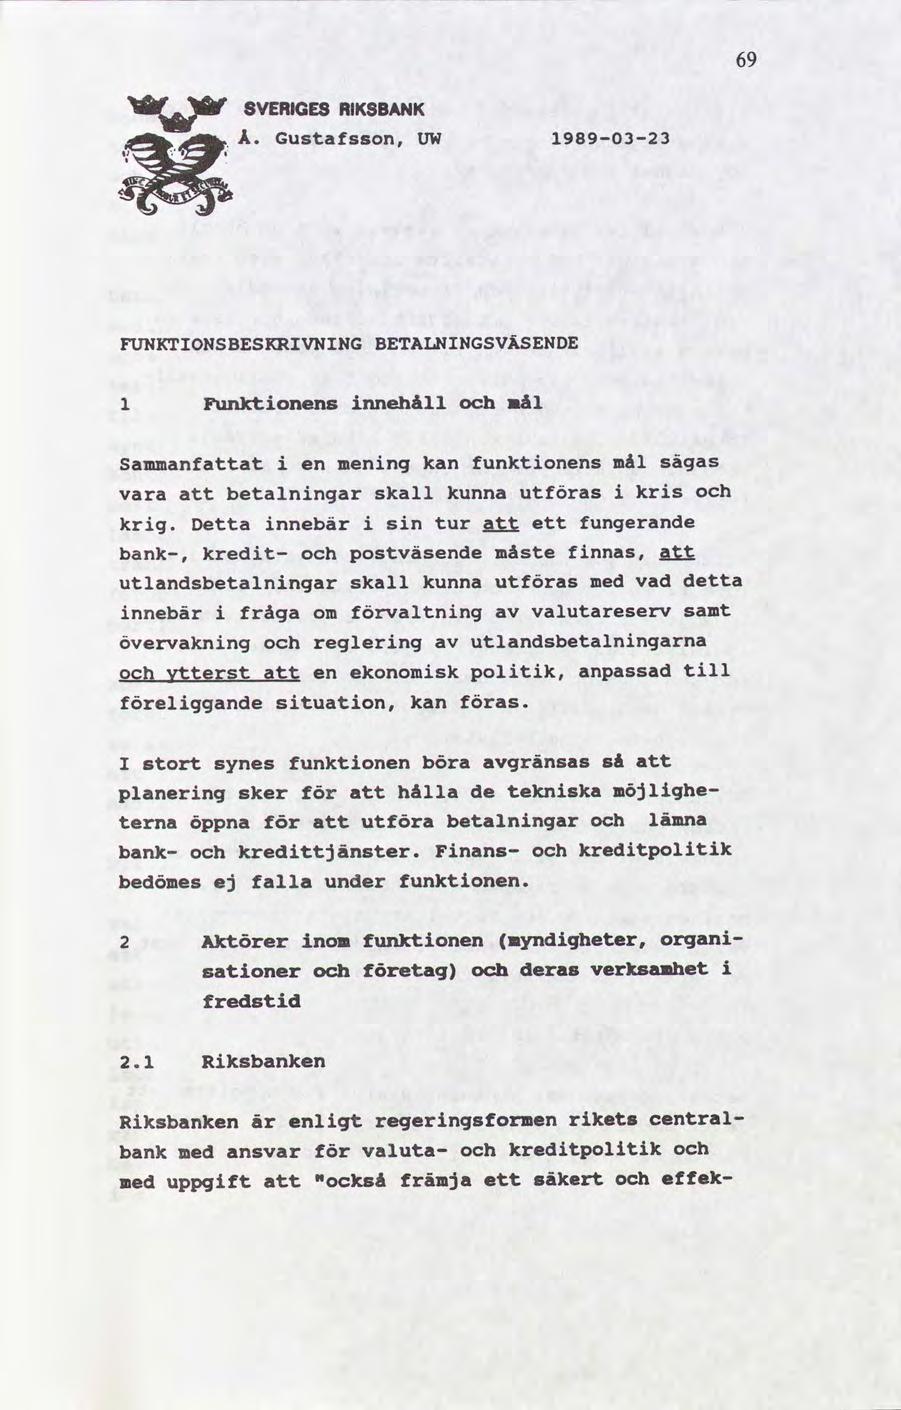 69 v svenne museum Å. Gustafsson, 19890323 UW FUNKTIONSBESKRIVNING BETALNINGSVÃSENDE 1 Funktonens nnehåll nål sammanfat vara en menng kan betalnngar skall kunna krg.